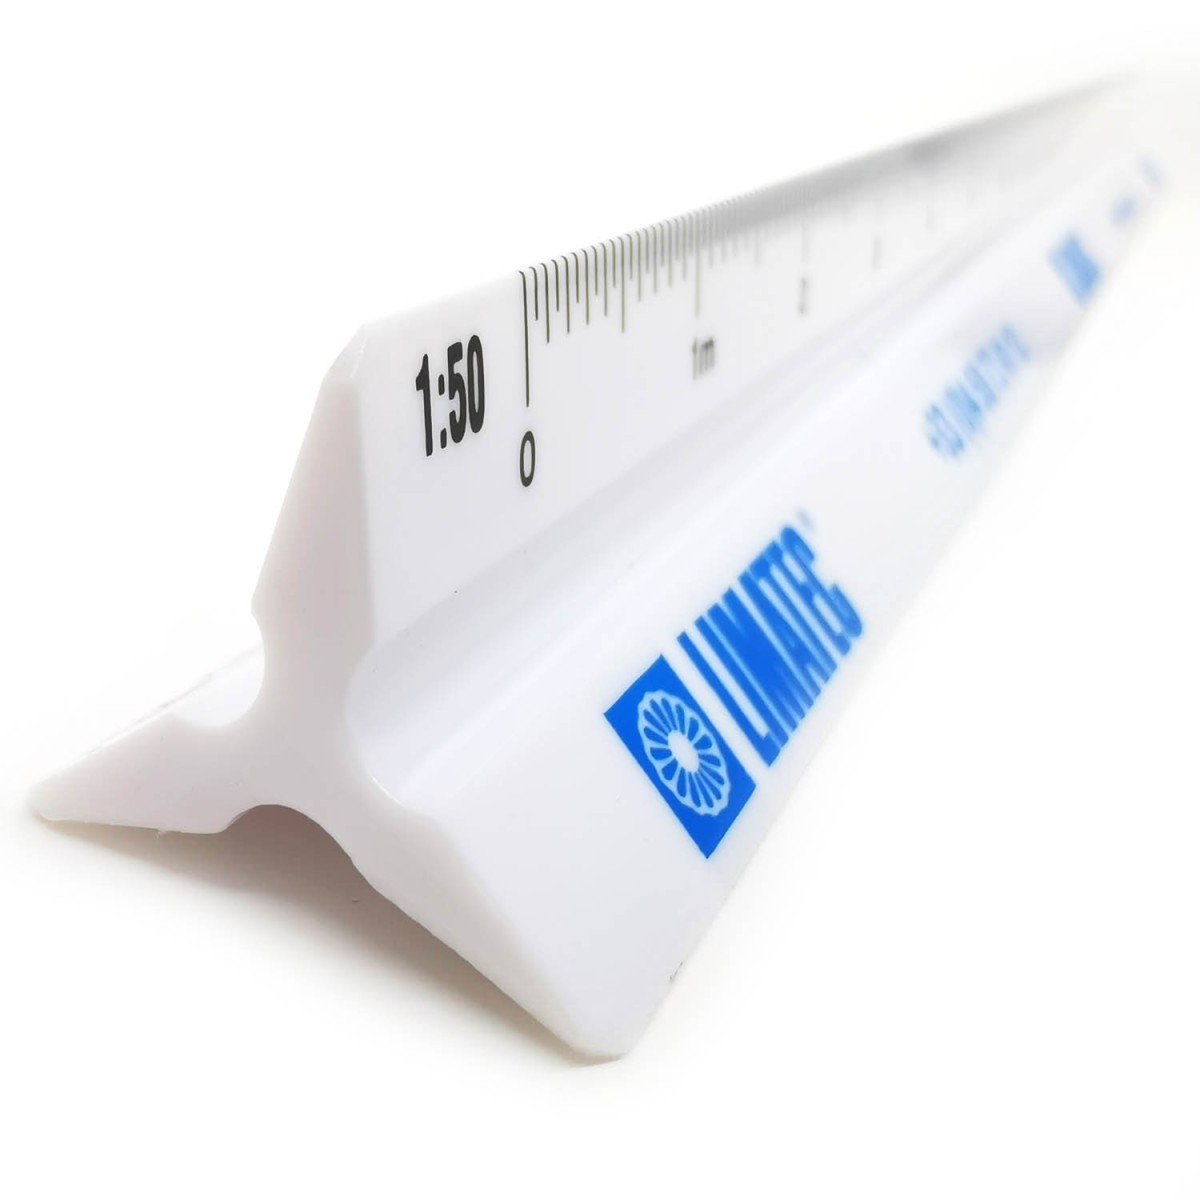 Plastic triangular ruler high gloss white or black